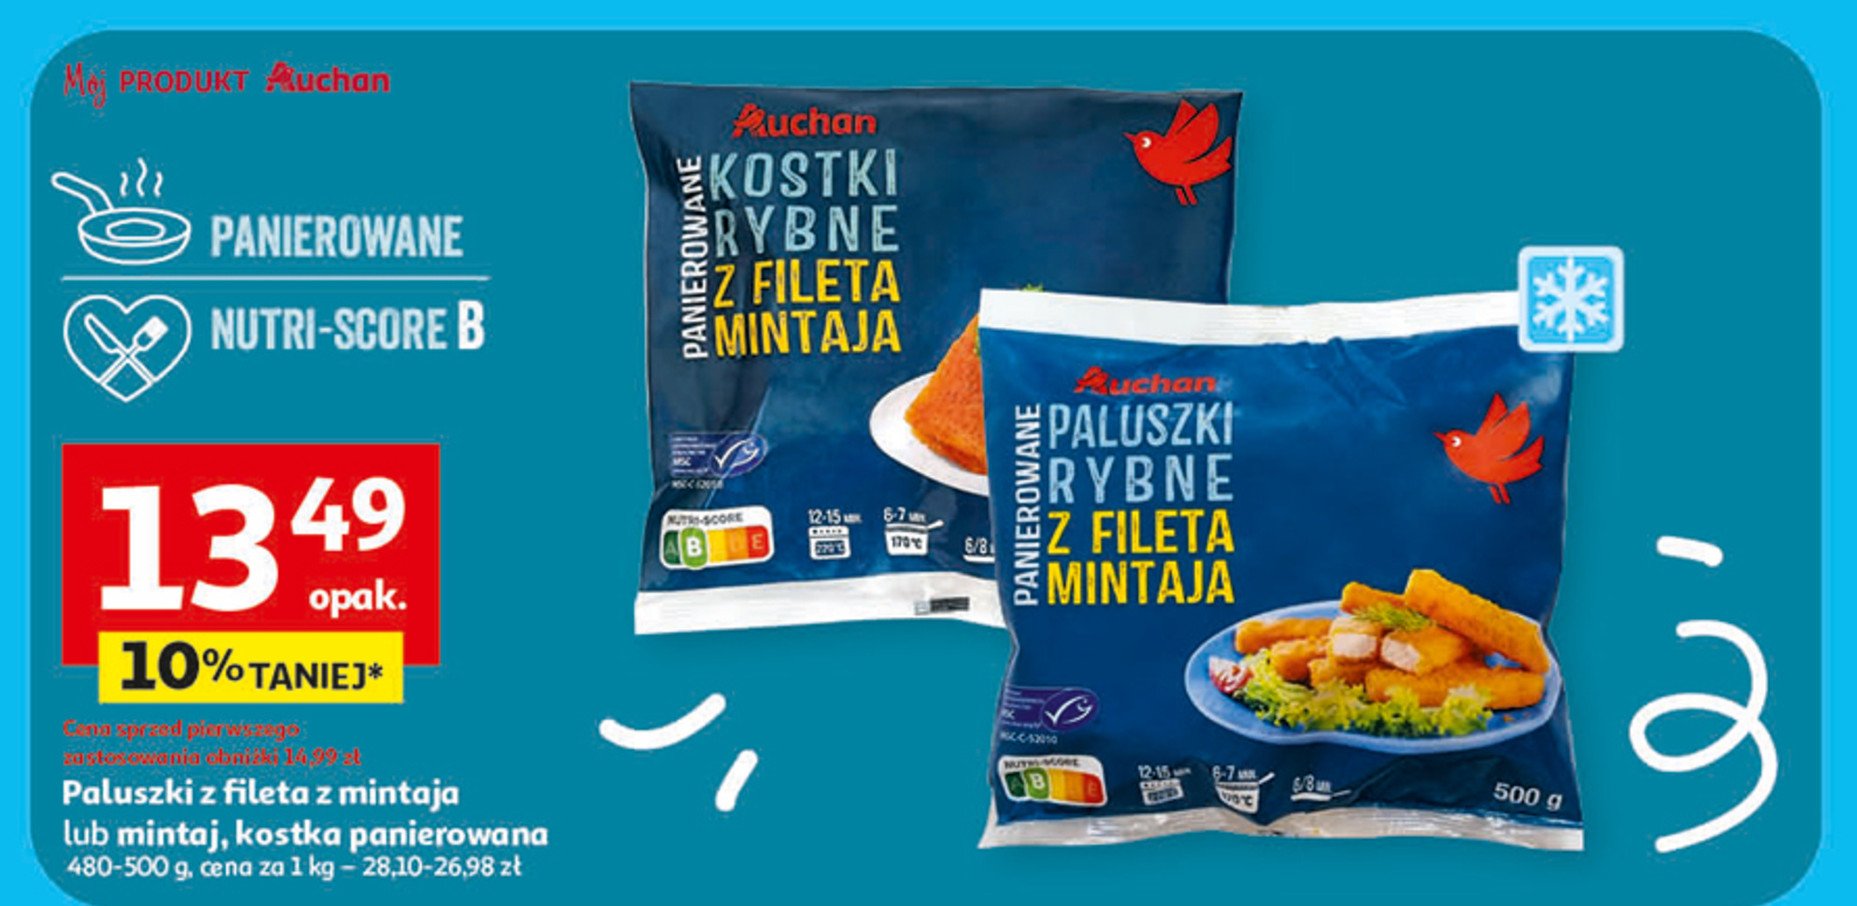 Kostki rybne z fileta mintaja Auchan różnorodne (logo czerwone) promocja